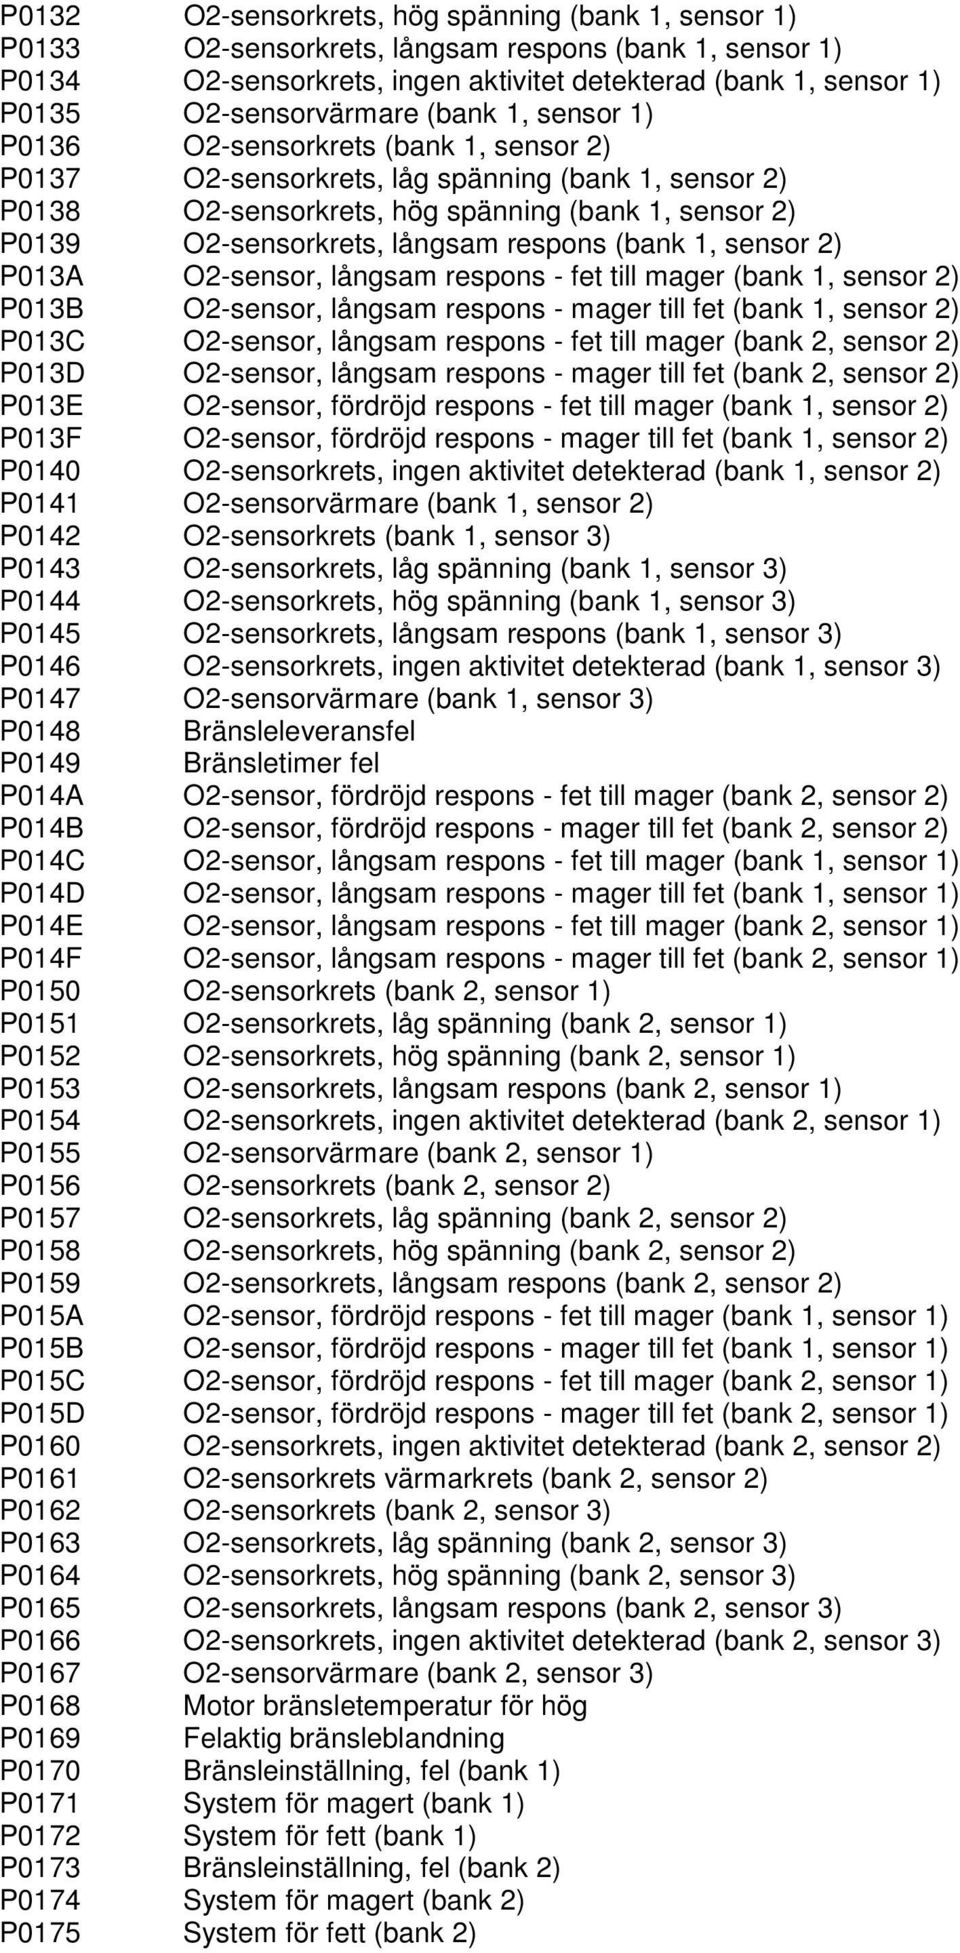 O2-sensorkrets, långsam respons (bank 1, sensor 2) P013A O2-sensor, långsam respons - fet till mager (bank 1, sensor 2) P013B O2-sensor, långsam respons - mager till fet (bank 1, sensor 2) P013C